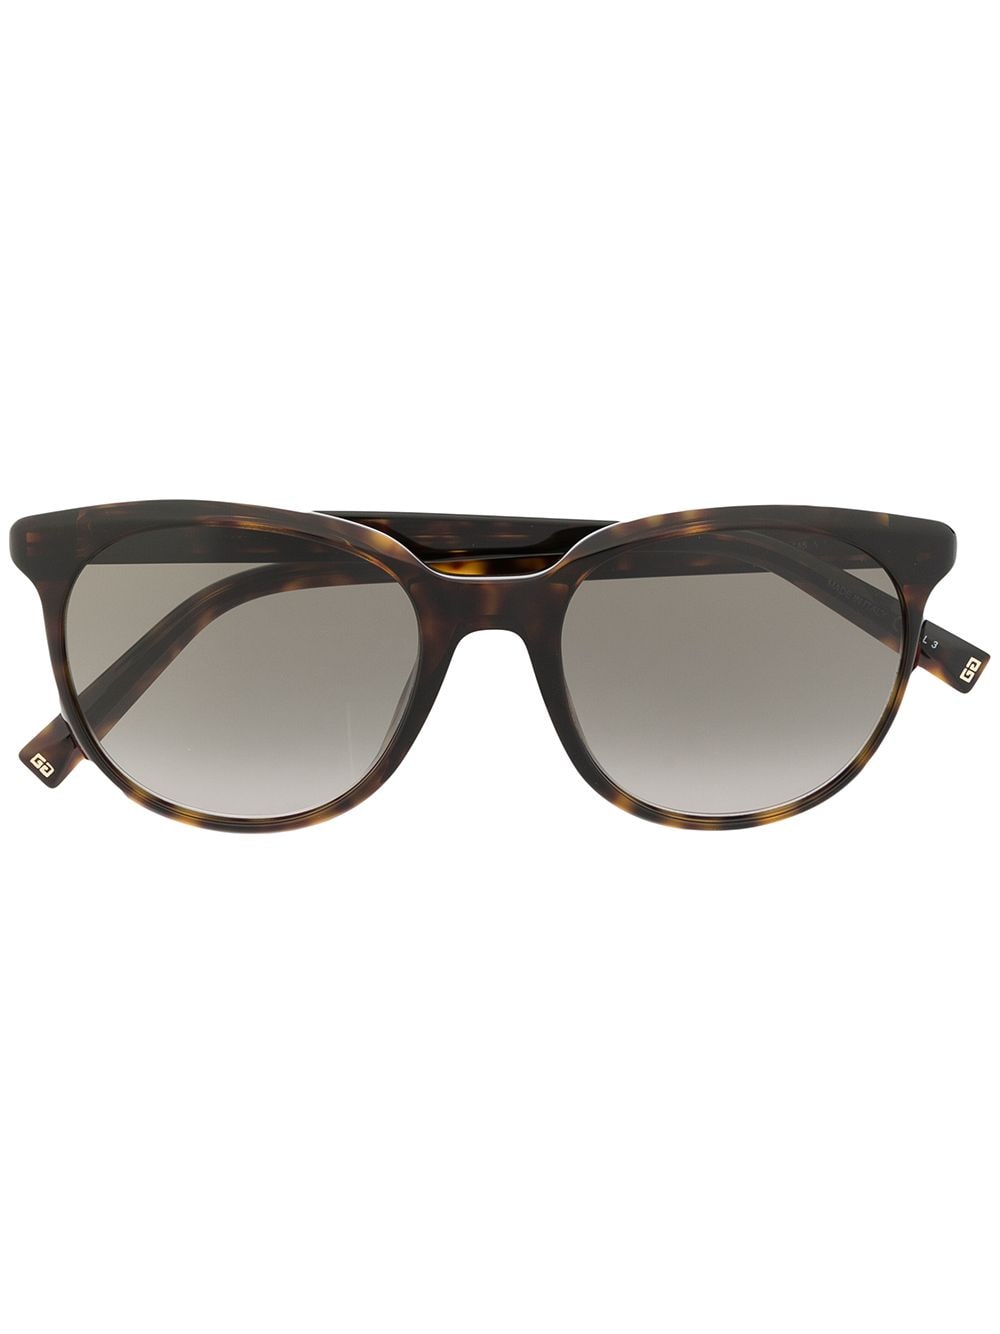 фото Givenchy eyewear солнцезащитные очки черепаховой расцветки